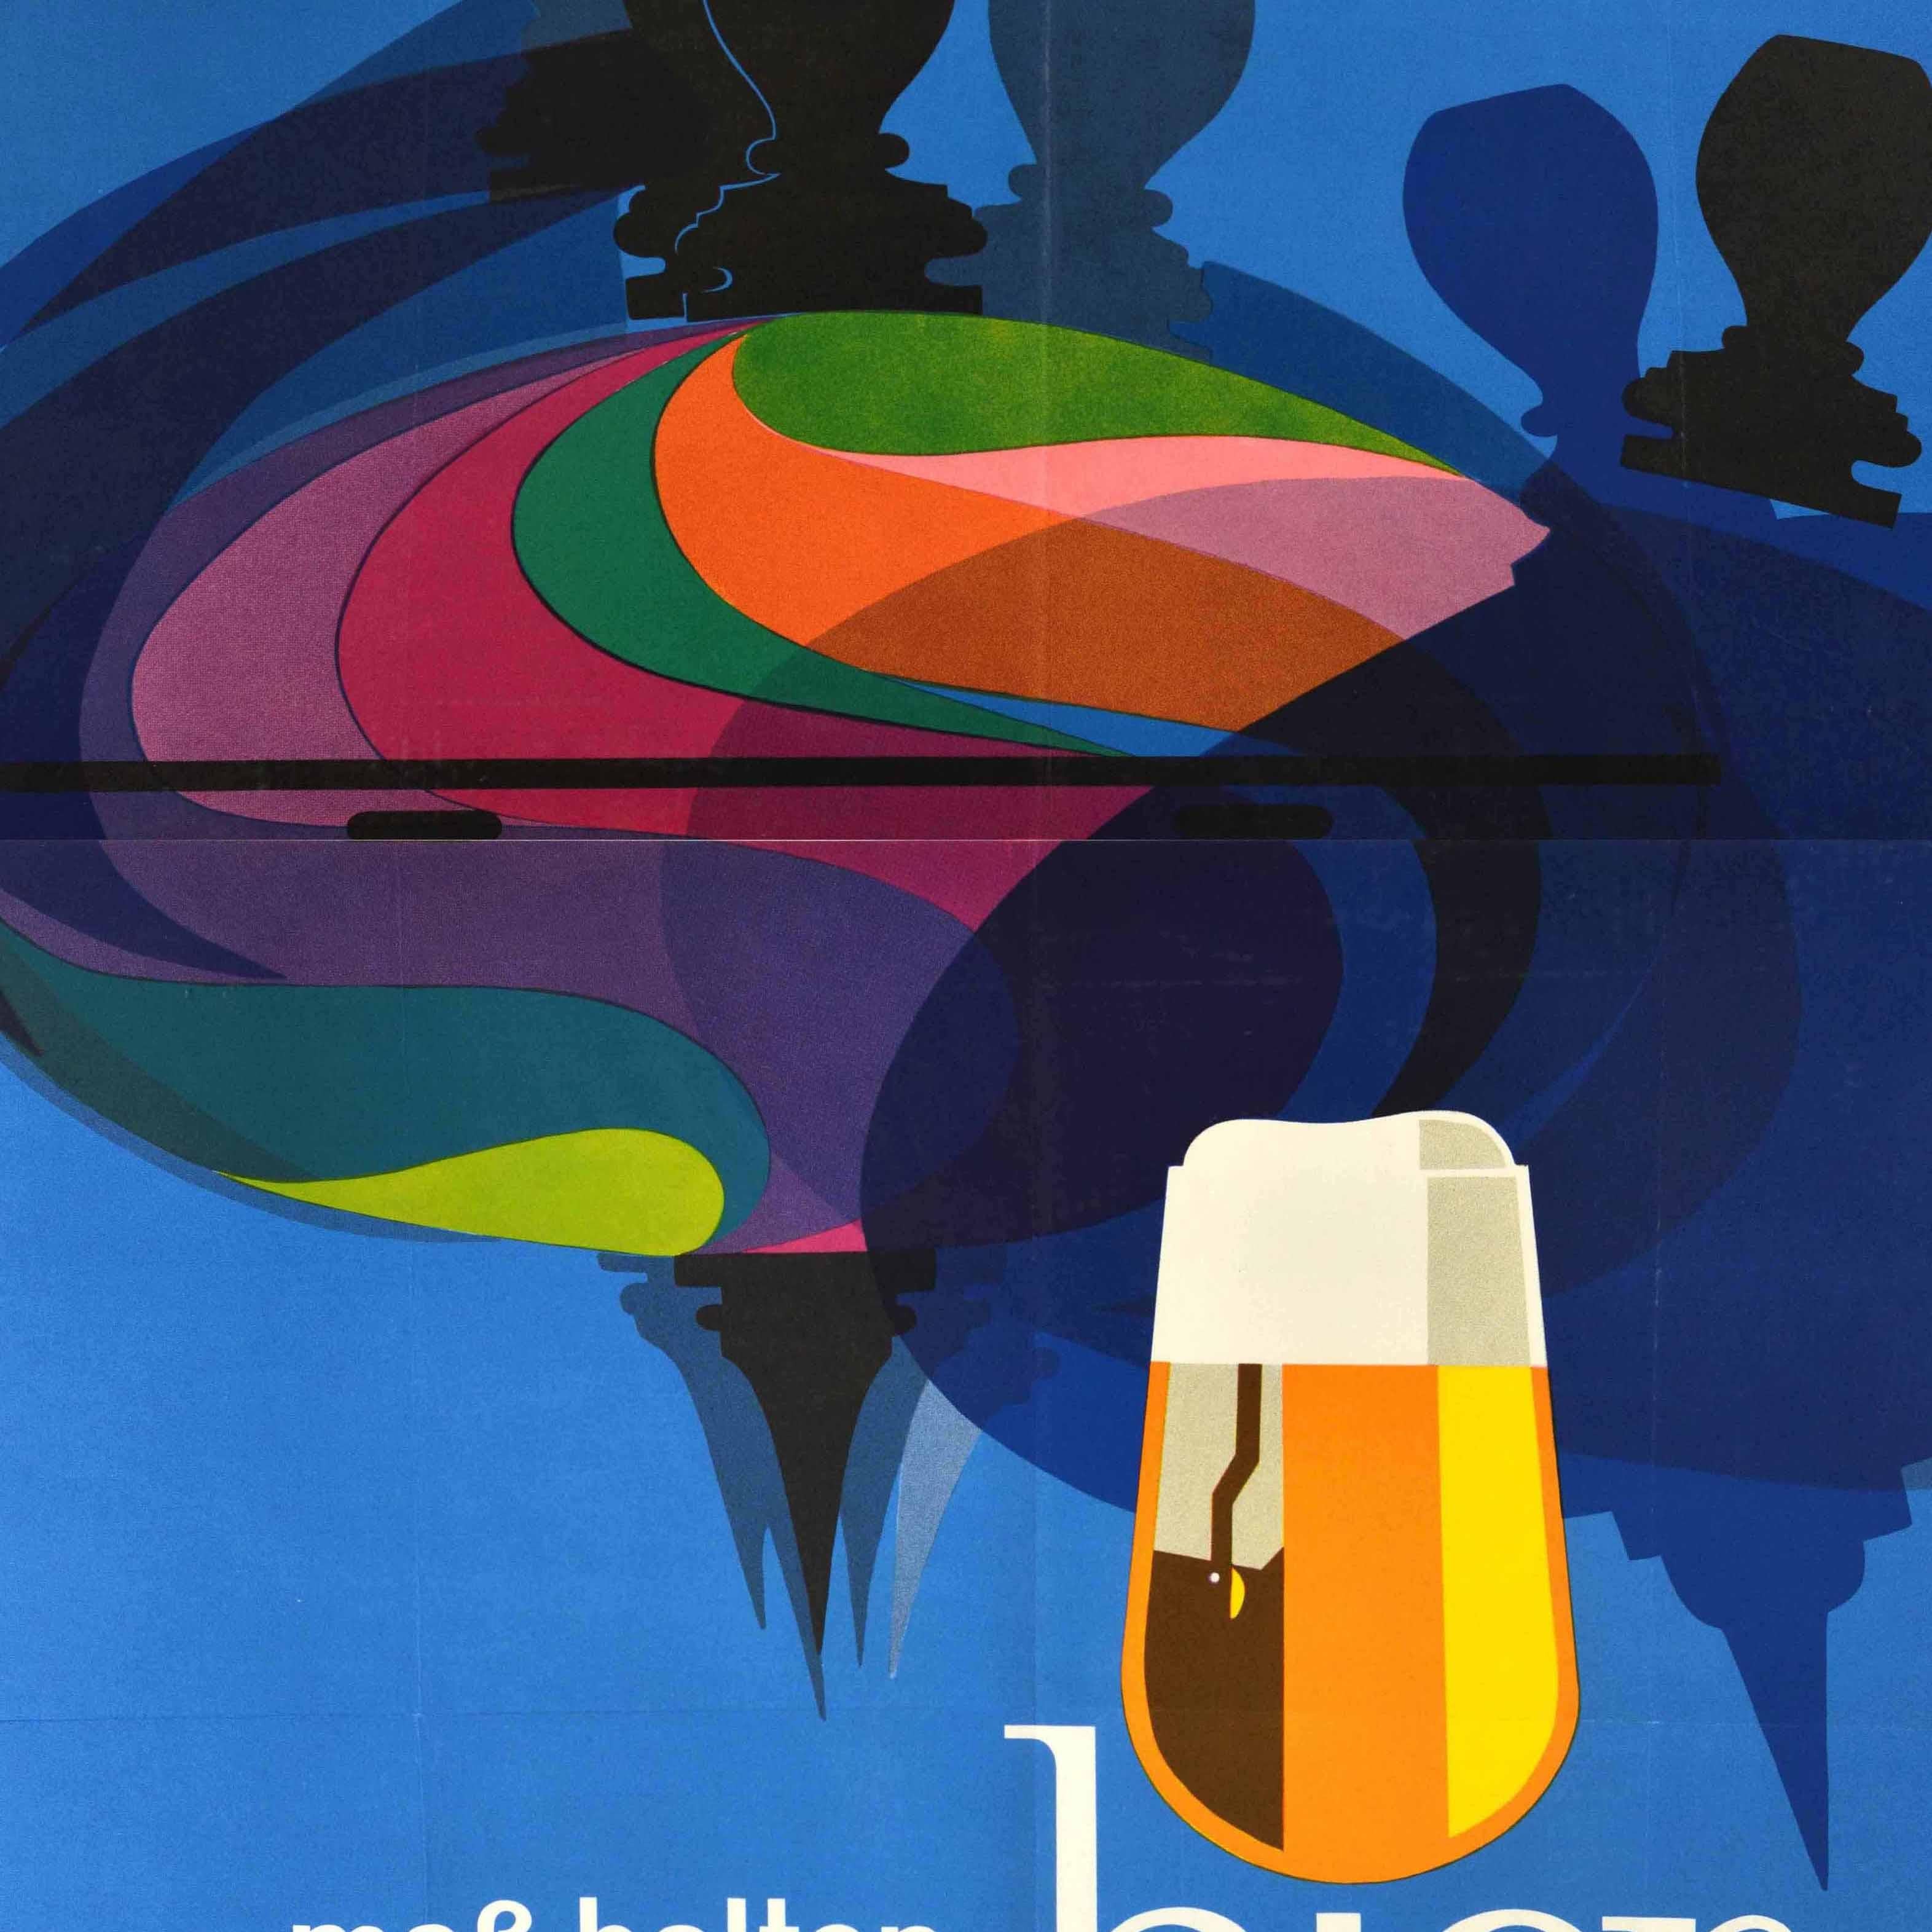 Original Vintage-Werbeplakat - Mass halten bier trinken / Drink beer moderately - mit einem tollen Design, das einen bunten Spielzeugkreisel und die Schatten auf blauem Hintergrund, den Titeltext und ein Bierglas als Teil des i in bier darunter